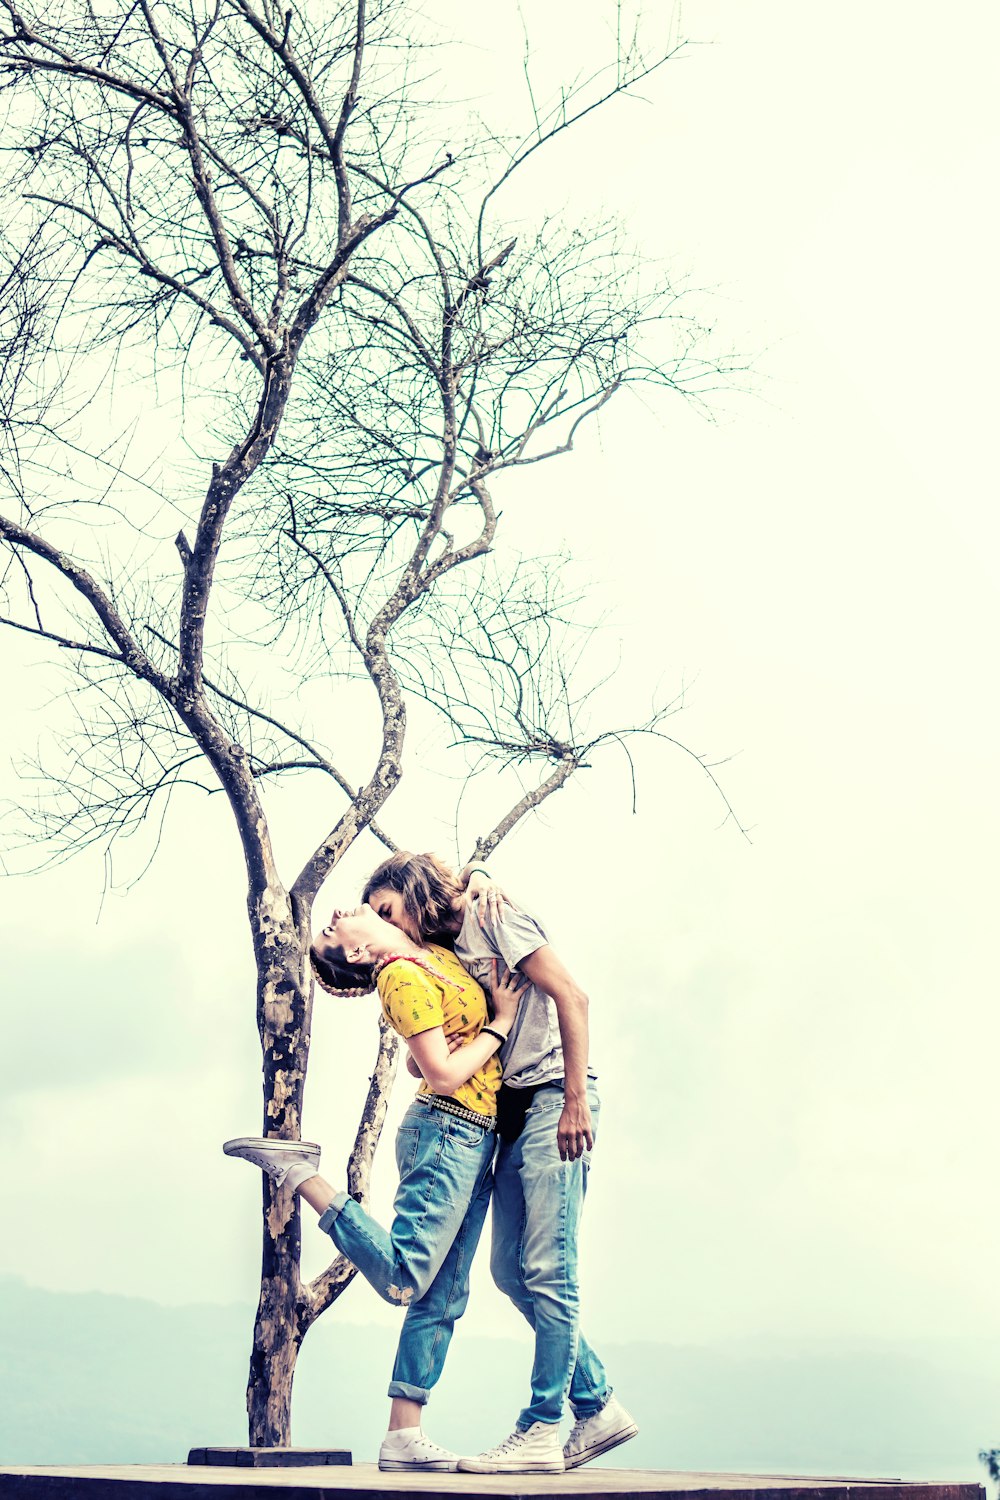 잎사귀 없는 나무 아래에서 키스하는 남자와 여자